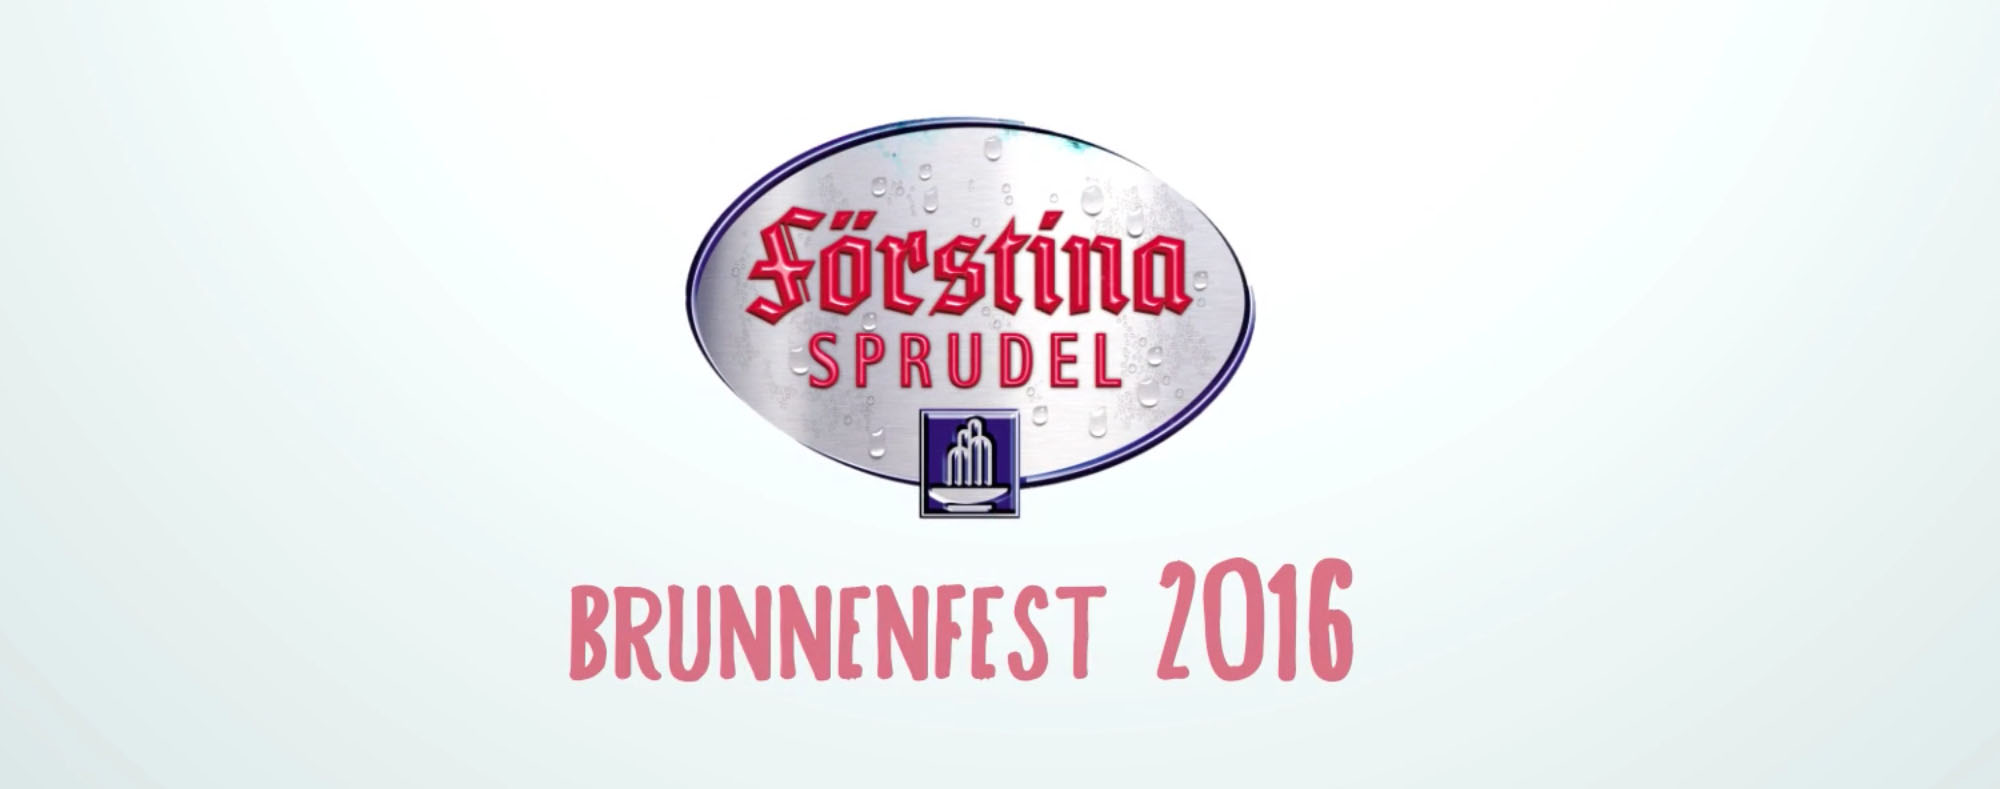 Förstina, Sprudel, Brunnenfest, 2016, Filmproduktion, Dokumentation